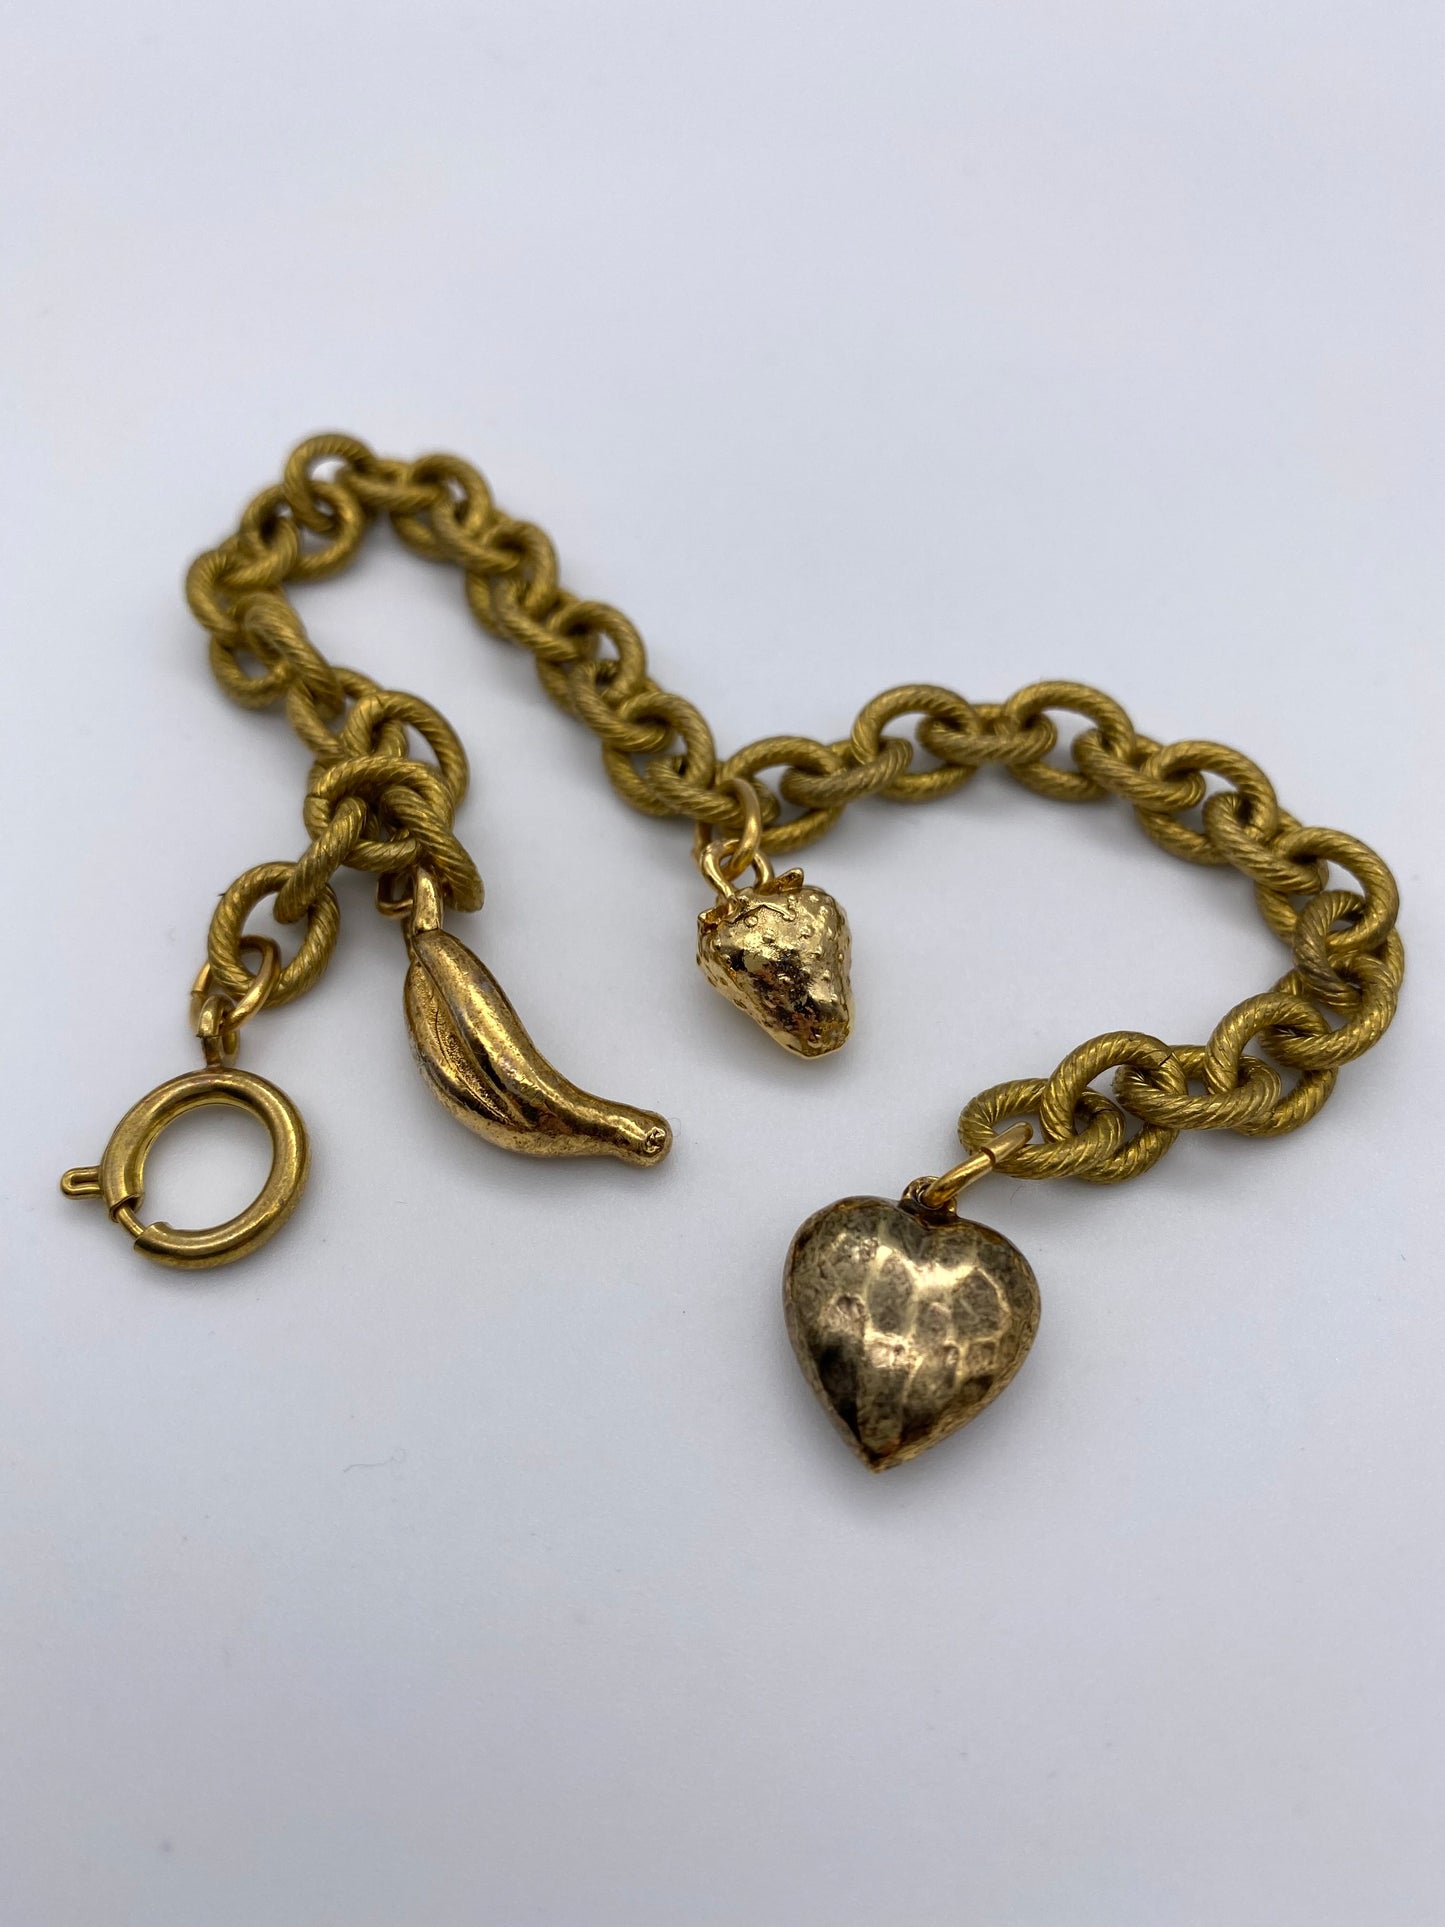 Fruit chain bracelet - Gold